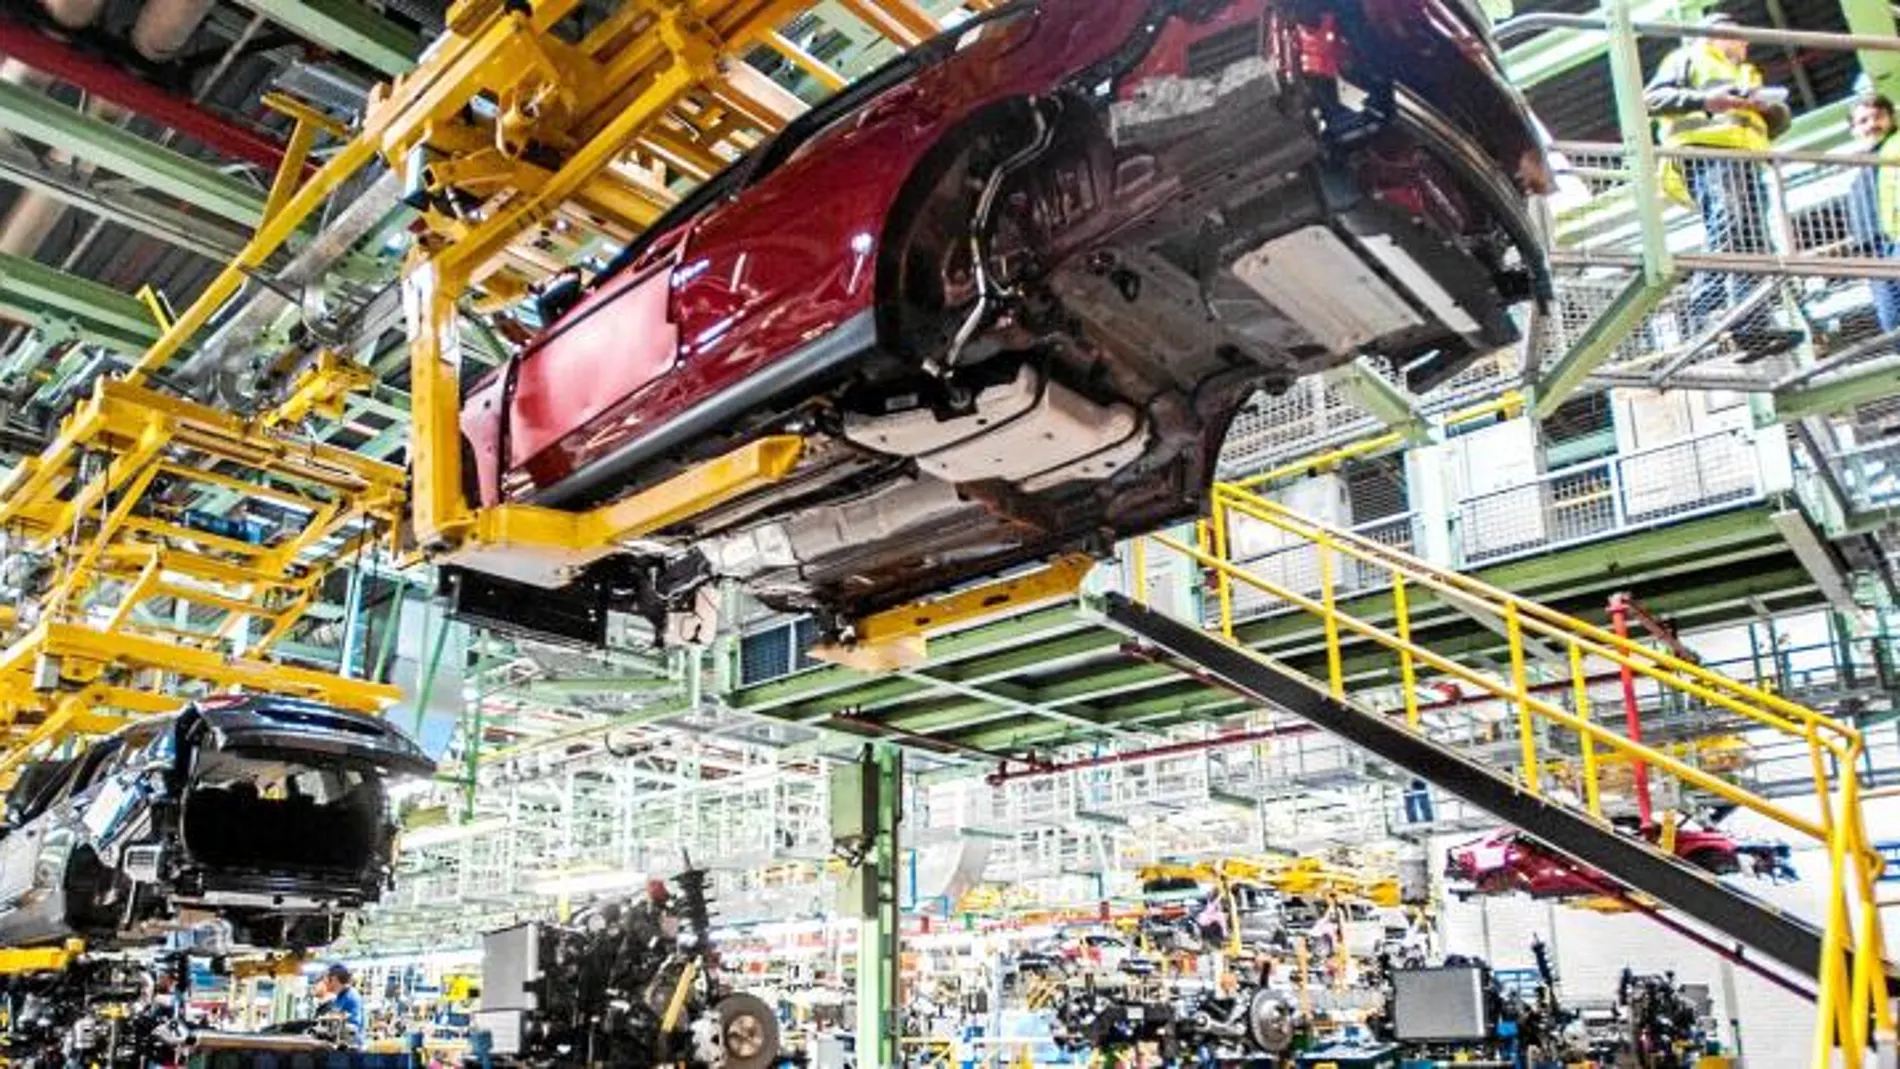 EMPLEO. El sector del automóvil presenta unos muy buenos datos de puestos de trabajo. En la Comunitat Valenciana se ha alcanzado ya la cifra de 18.000 empleos y una facturación agrupada de 10.000 millones de euros. La industria da por finalizada la profunda crisis de los últimos años.